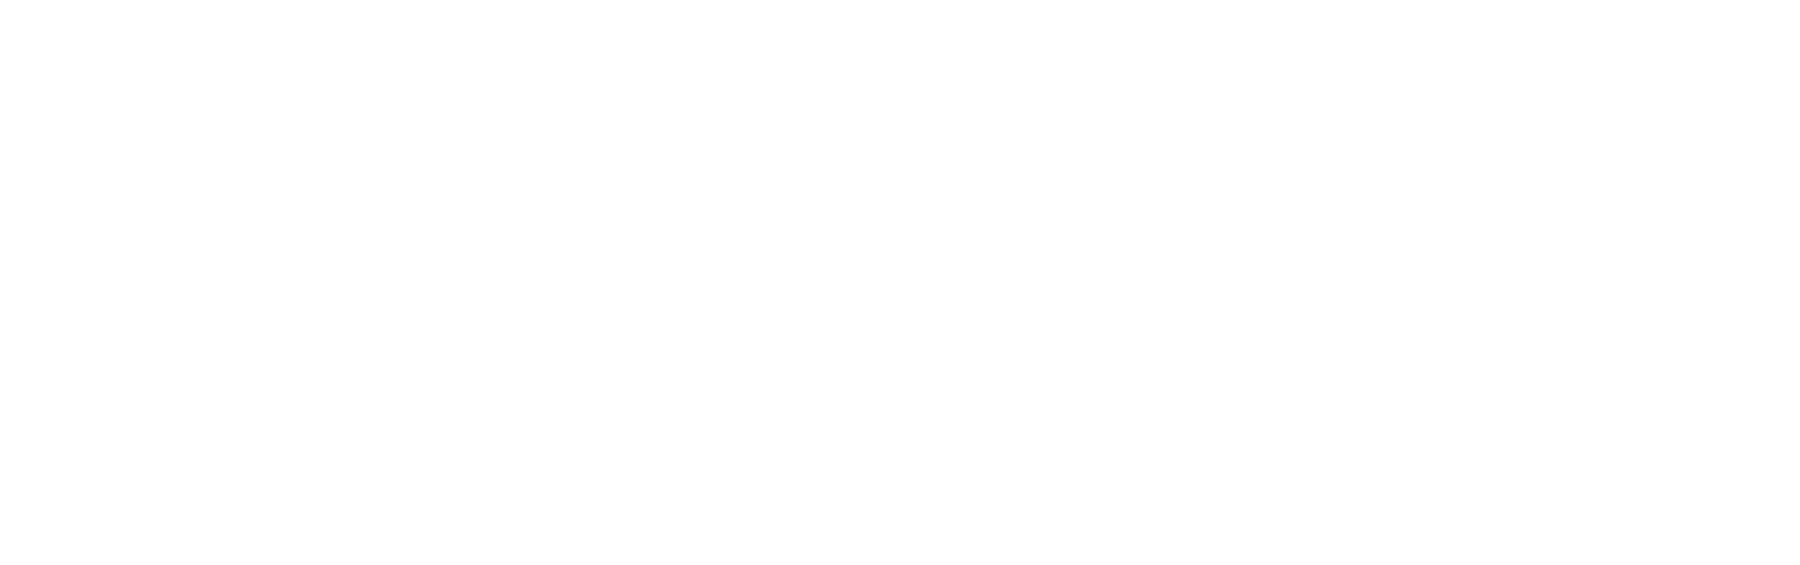 Monster Garage logo